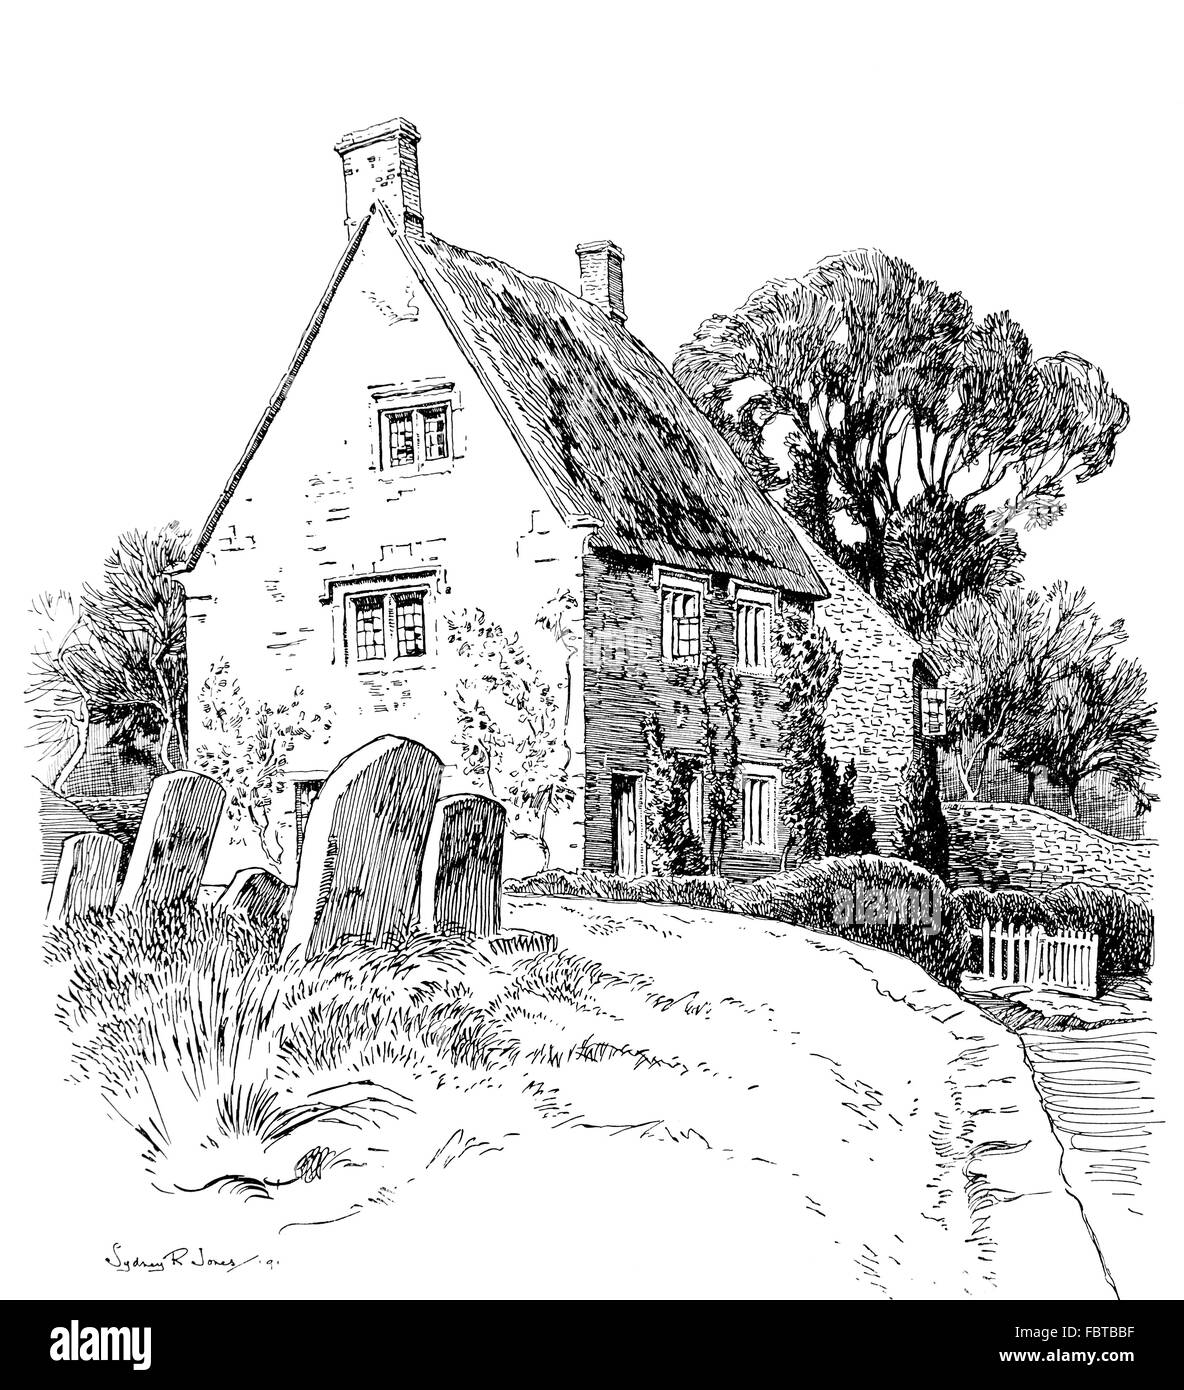 Regno Unito, Inghilterra, Oxfordshire, Claydon, Main Street, cottage con il tetto di paglia accanto al cimitero di 1911, illustrazione di linea Foto Stock